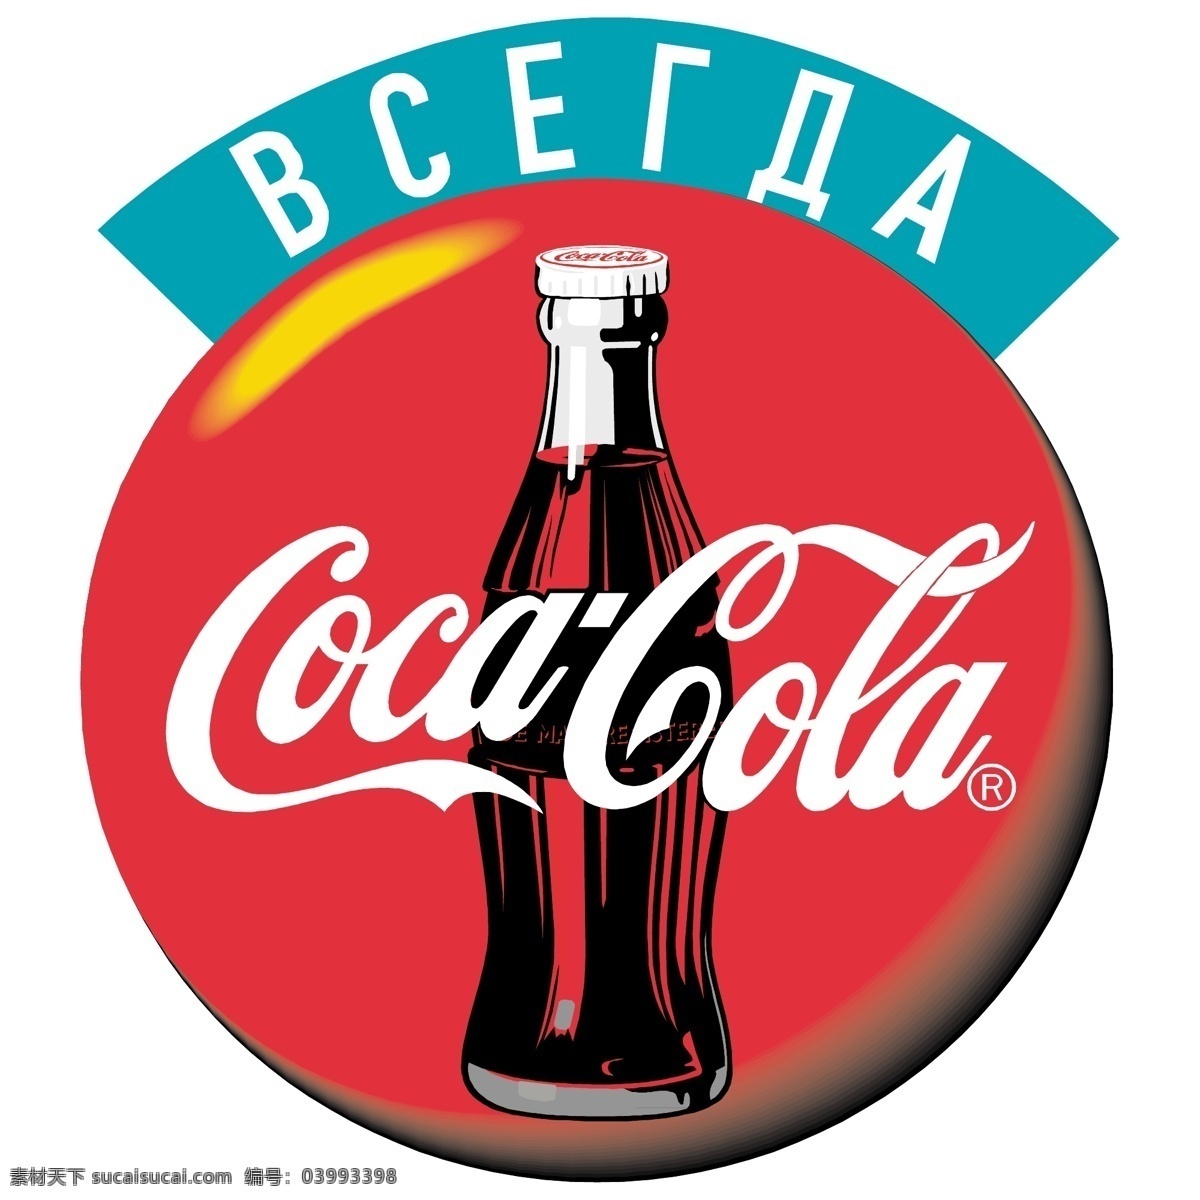 可口可乐 免费 标志 psd源文件 logo设计